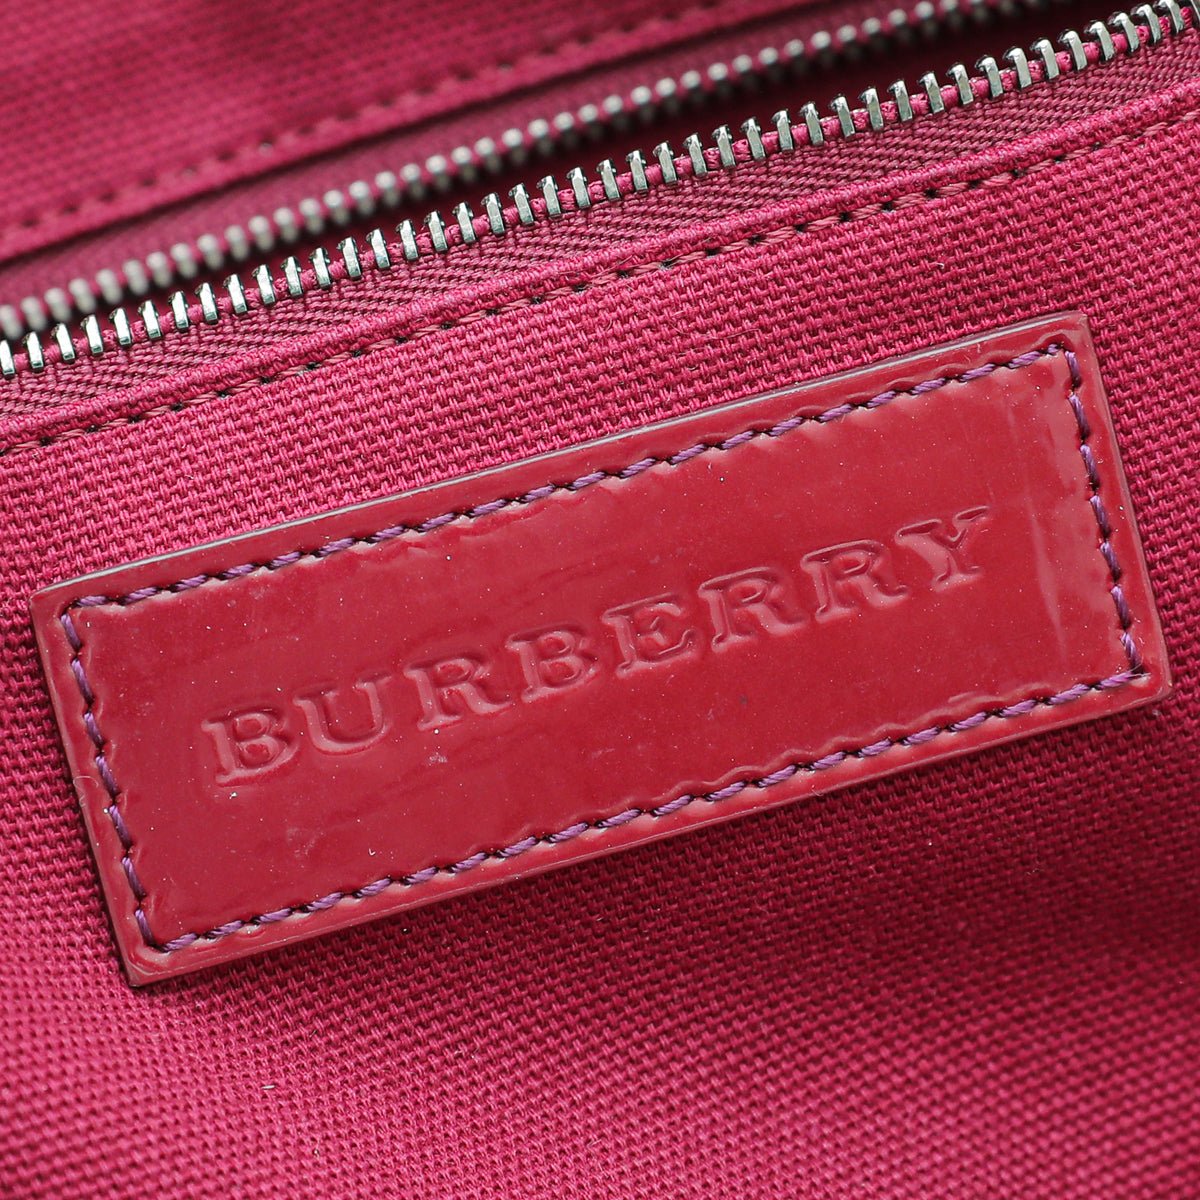 Burberry - Burberry Bicolor Nova Check PVC Tote Bag | The Closet